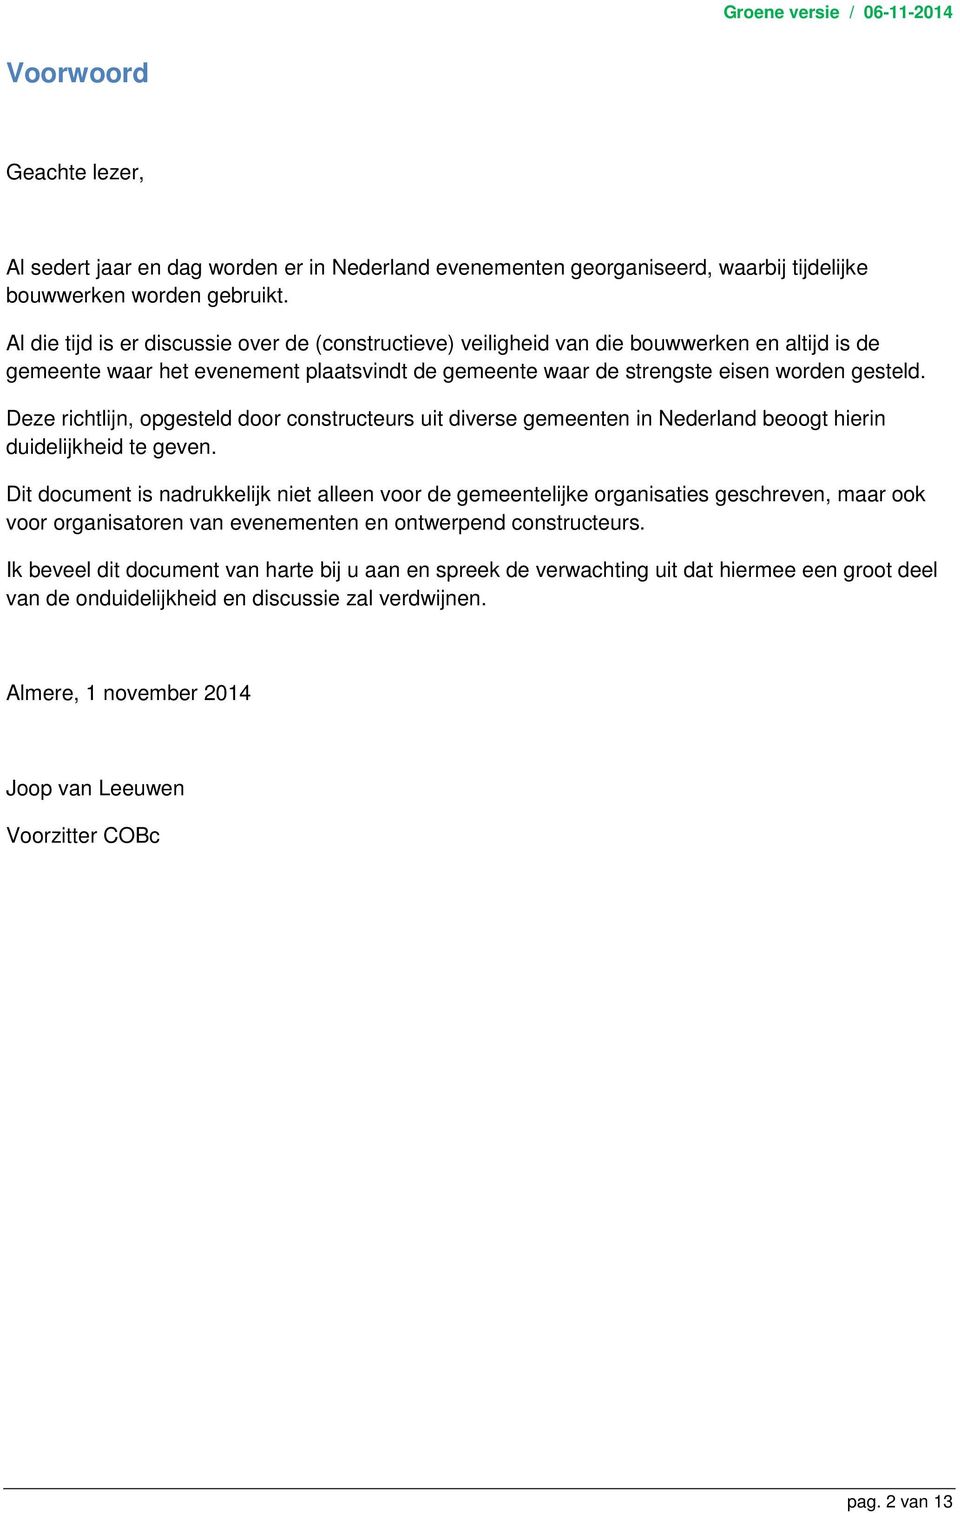 Deze richtlijn, opgesteld door constructeurs uit diverse gemeenten in Nederland beoogt hierin duidelijkheid te geven.